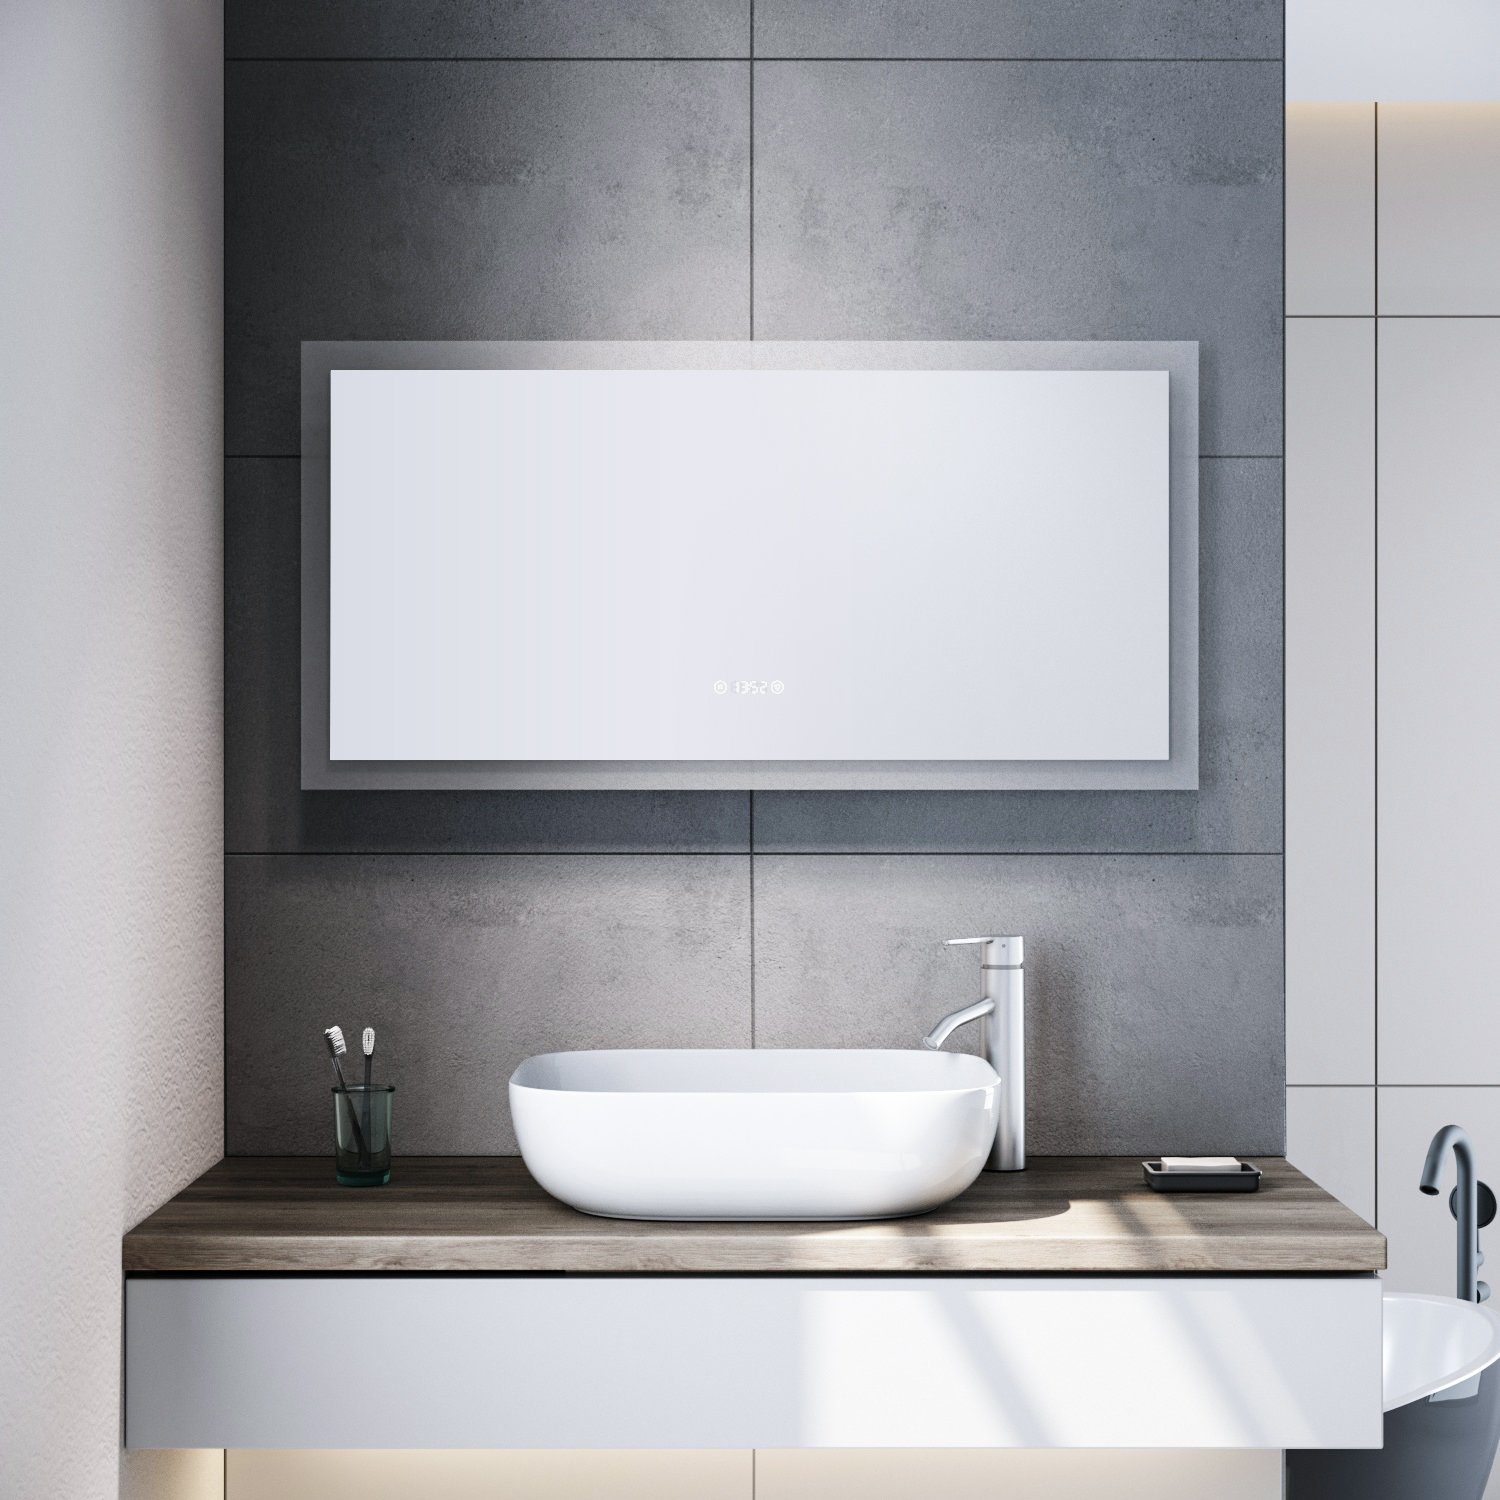 SONNI Badspiegel mit led cm 120x60 Badspiegel Beschlagfrei,Touch,Uhr,Temperaturanzeige beleuchtung Beschlagfrei